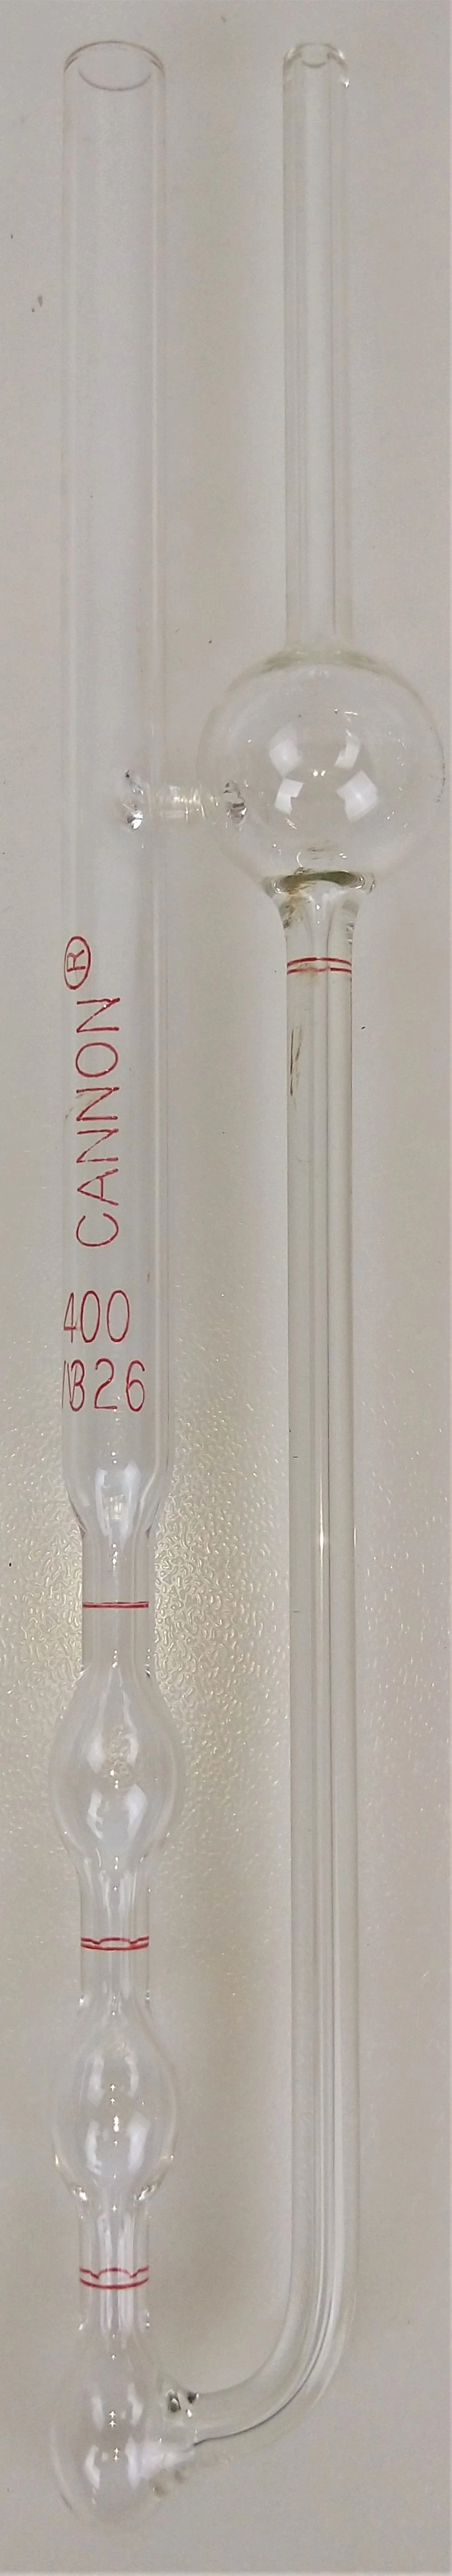 Cannon-Fenske CFOC-400 (9721-F74) Opaque Viscometer Tube (No Certificate) - Size 400